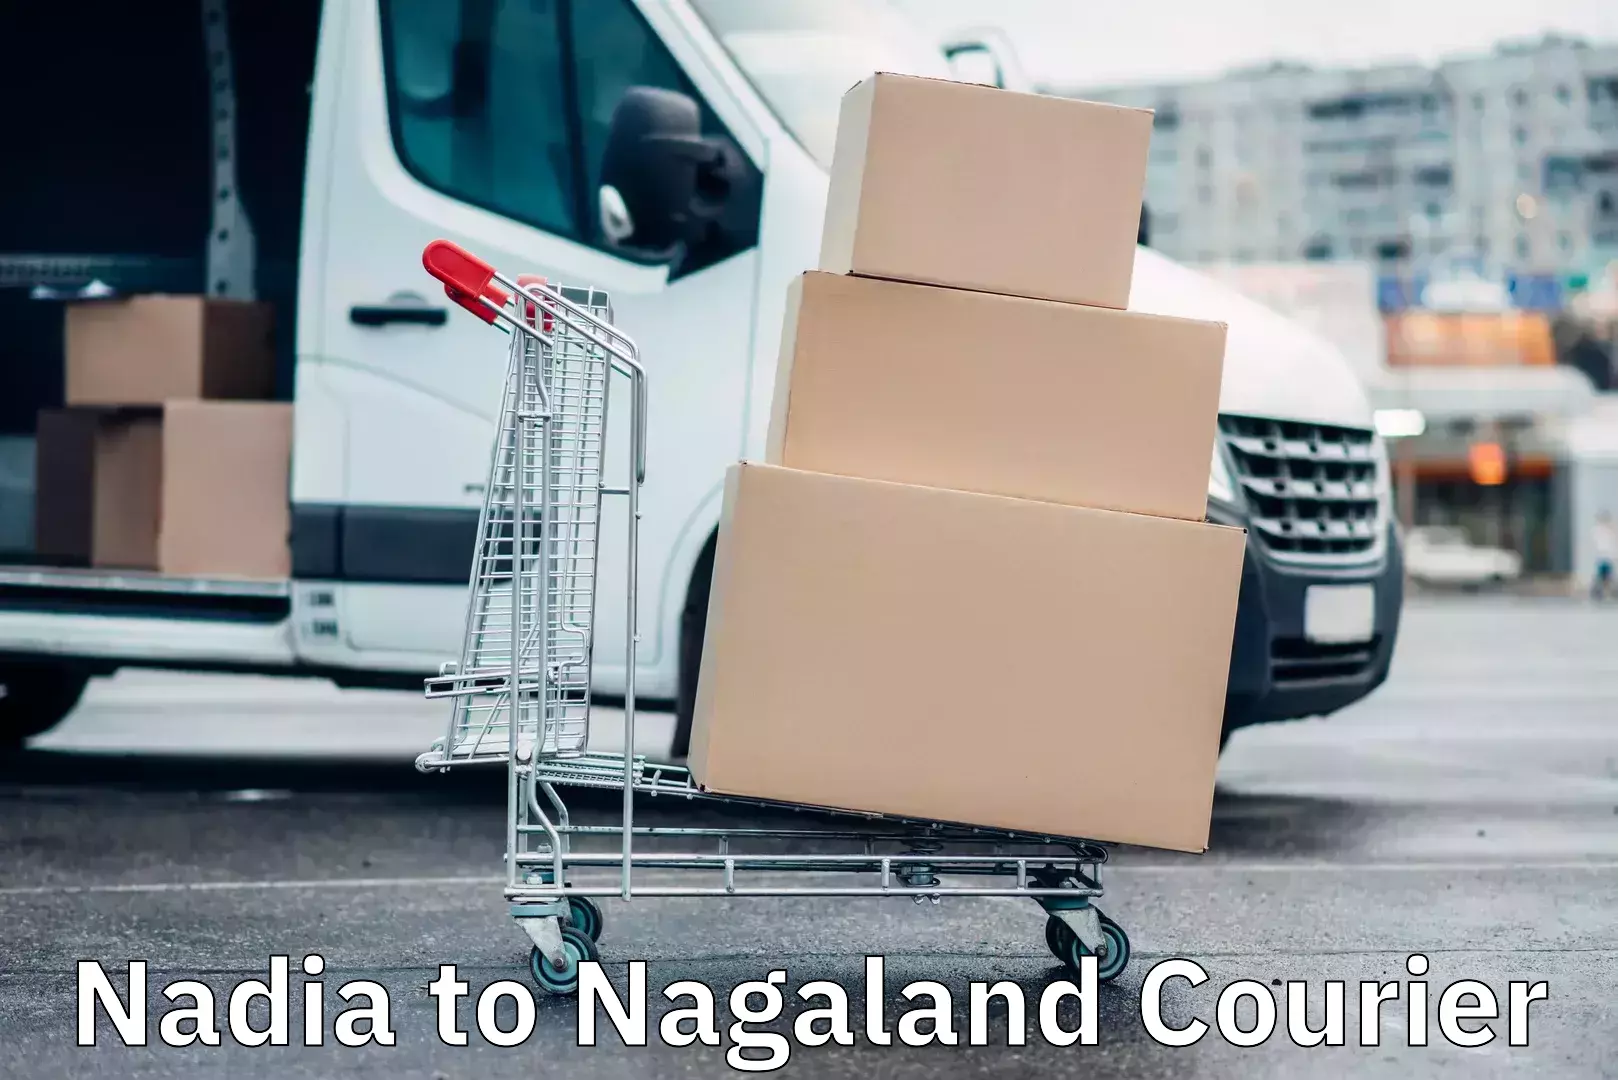 Express courier facilities Nadia to Nagaland